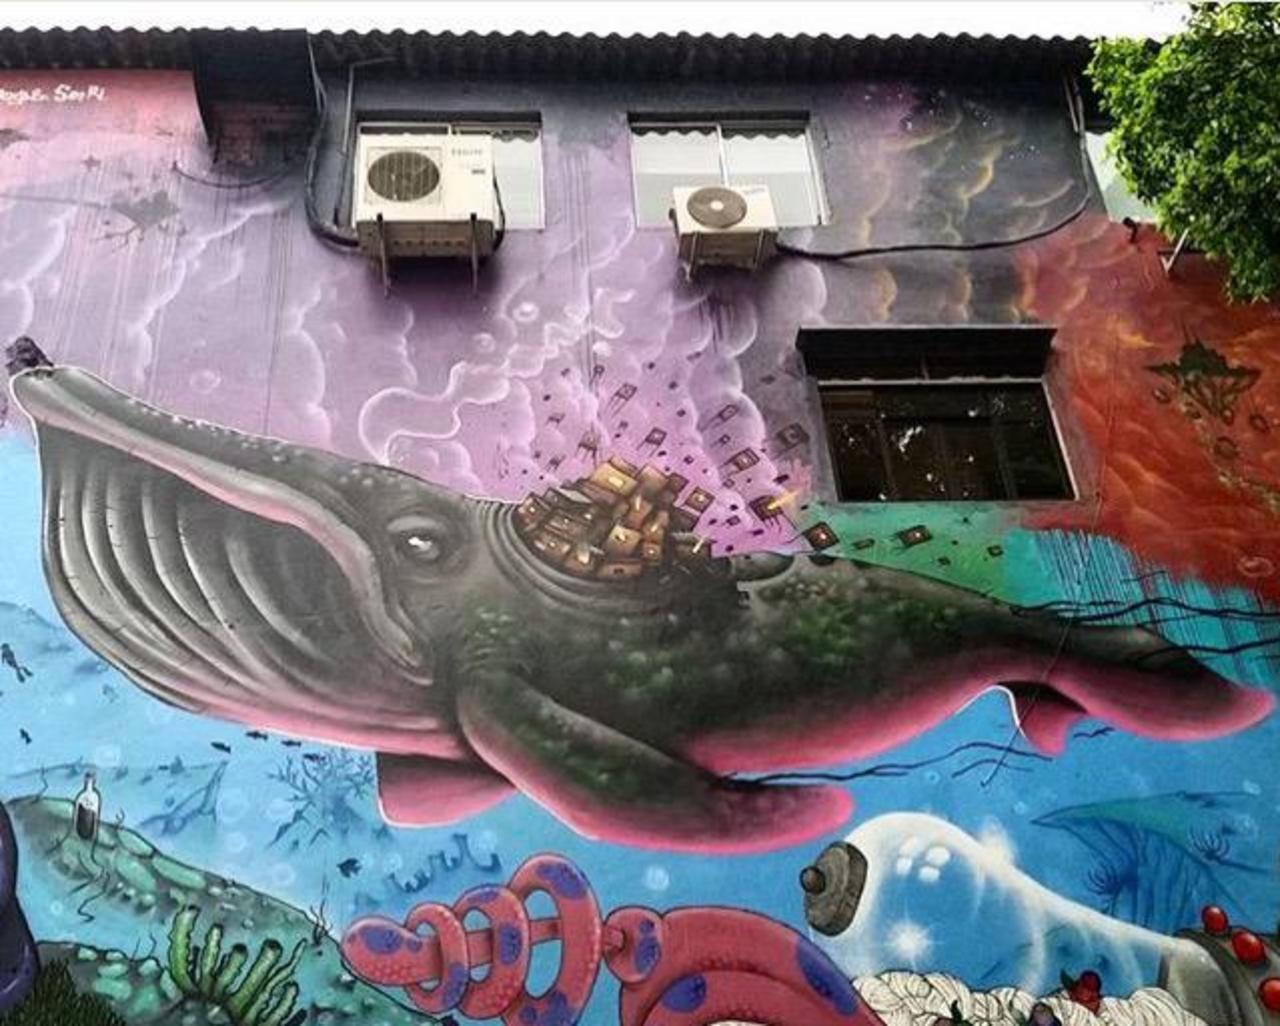 Street Art by joks_johnes Pinheiros, São Paulo 

#art #mural #graffiti #streetart http://t.co/h3Ey1S3GJk